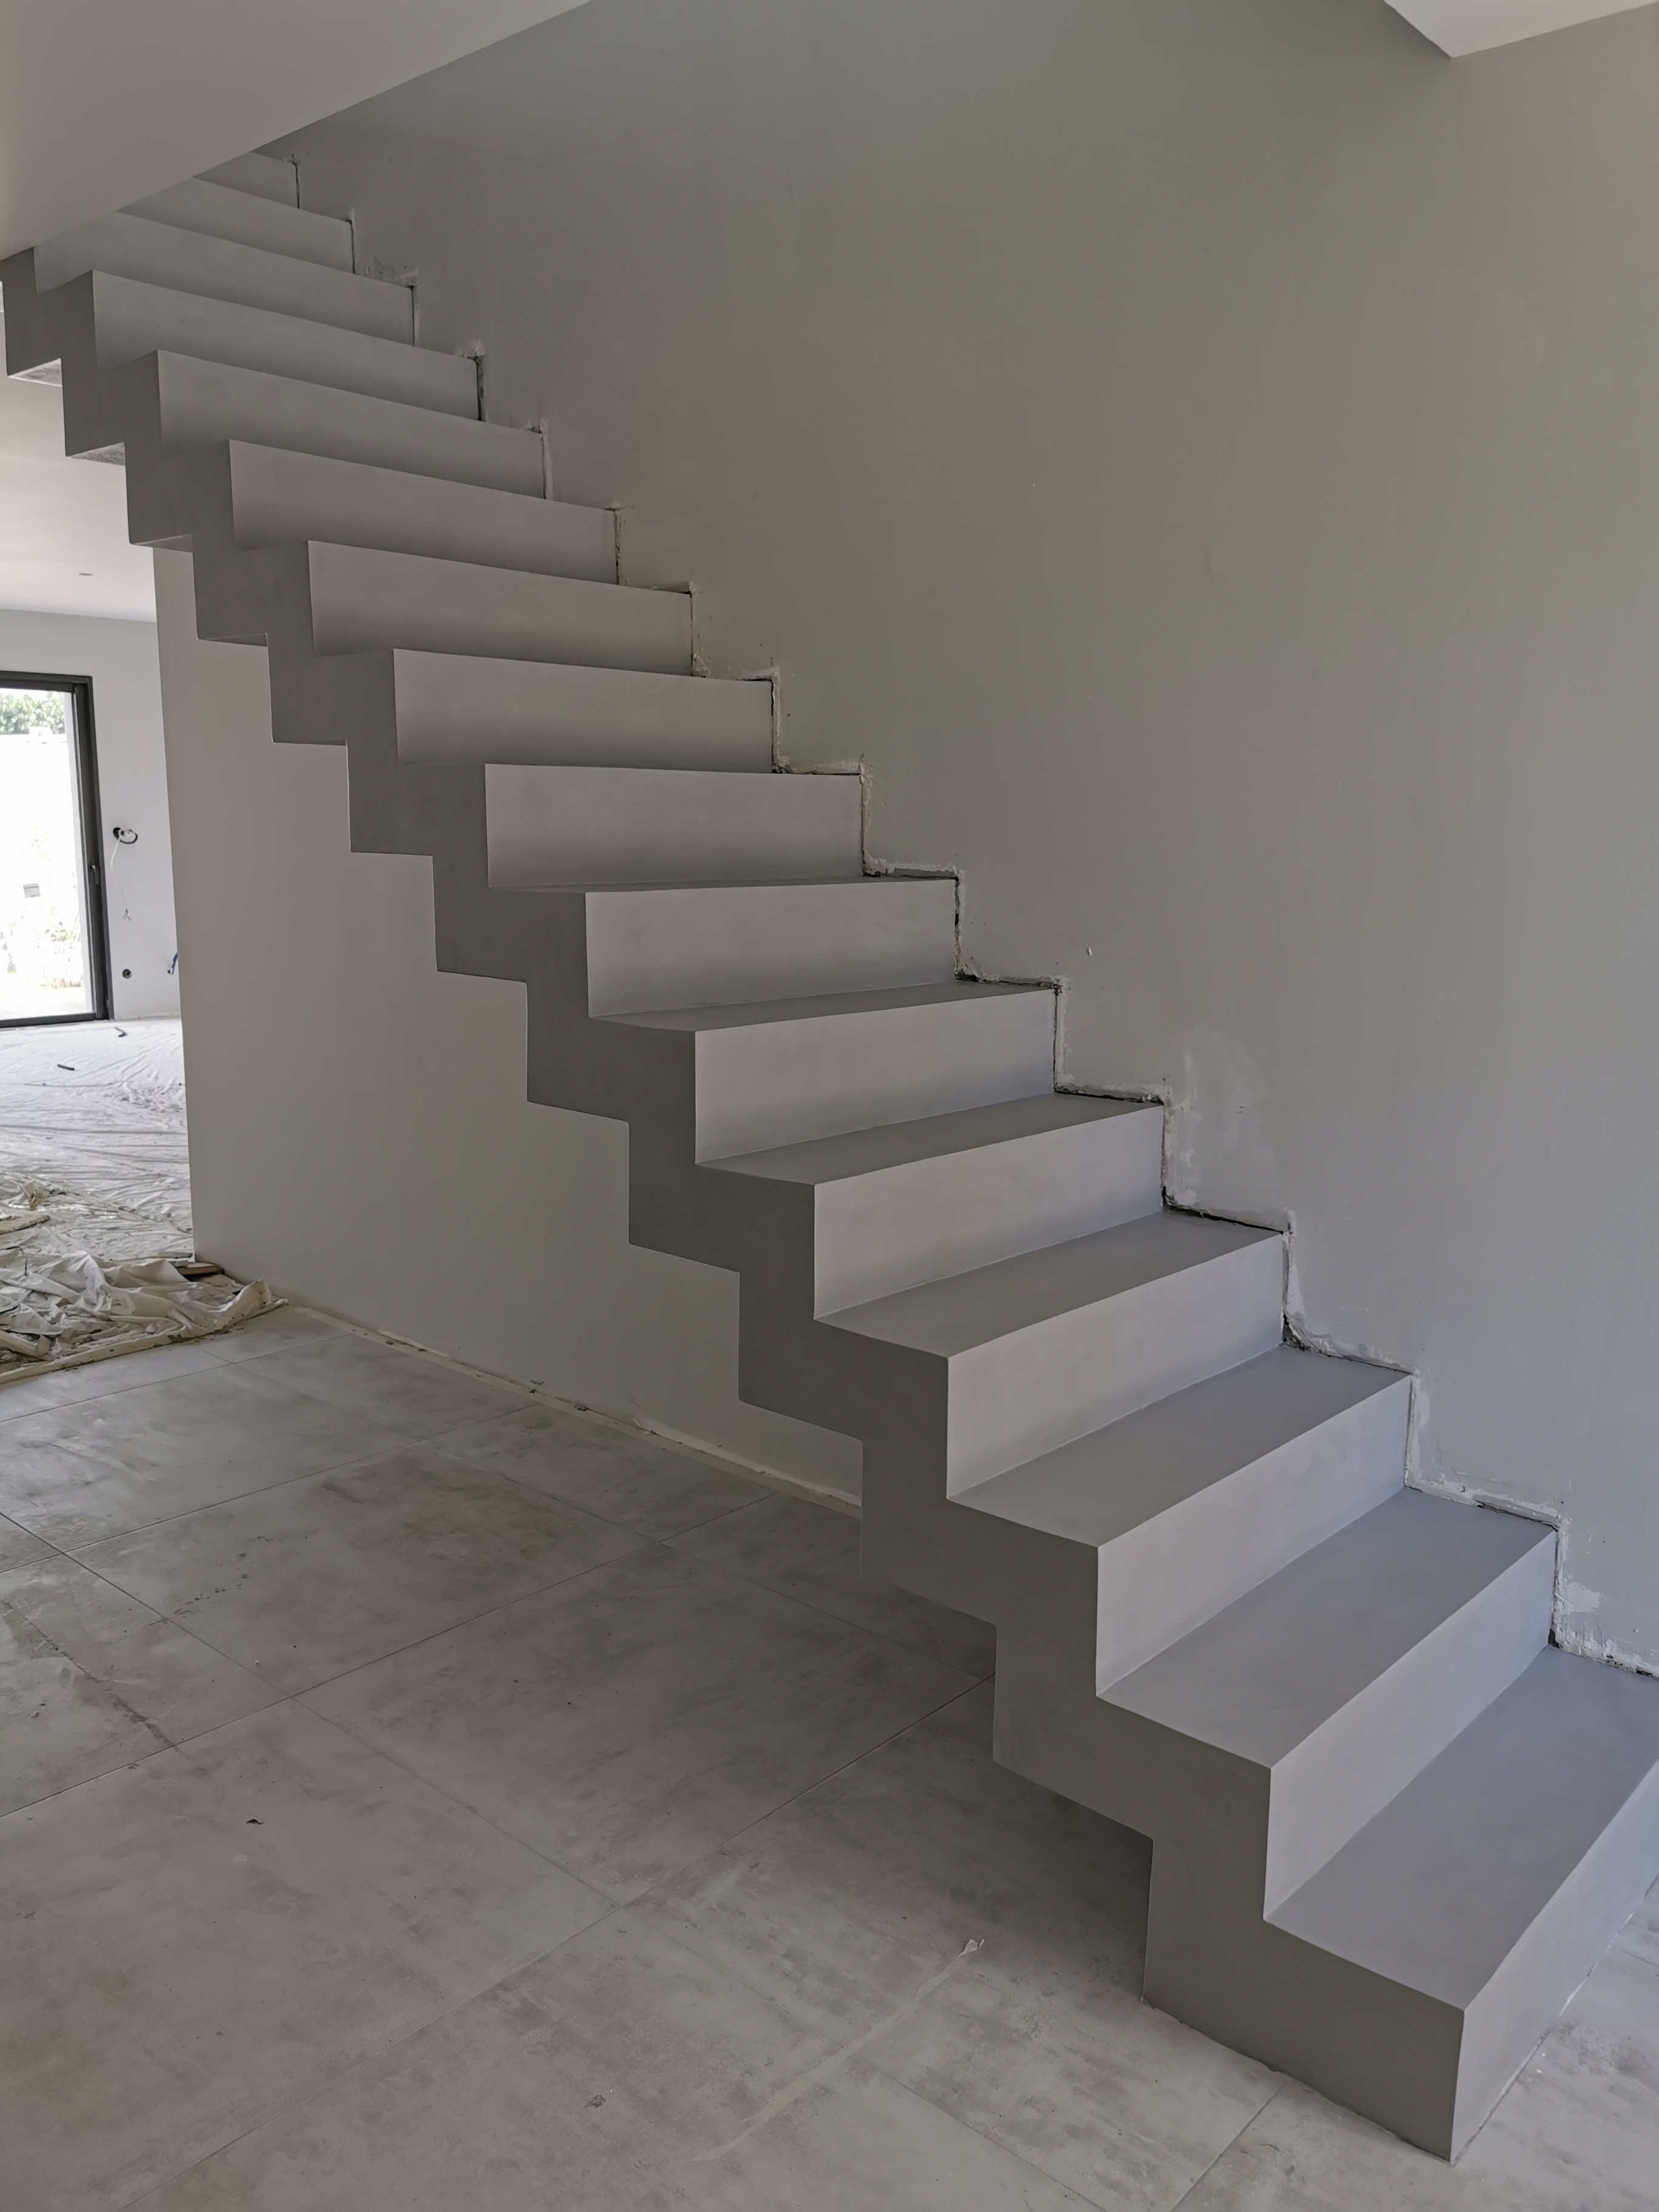 bel escalier crémaillère sur mesure en béton ciré vernis mat couleur gris souris A Cauderant dans Bordeaux en Gironde pour un constructeur